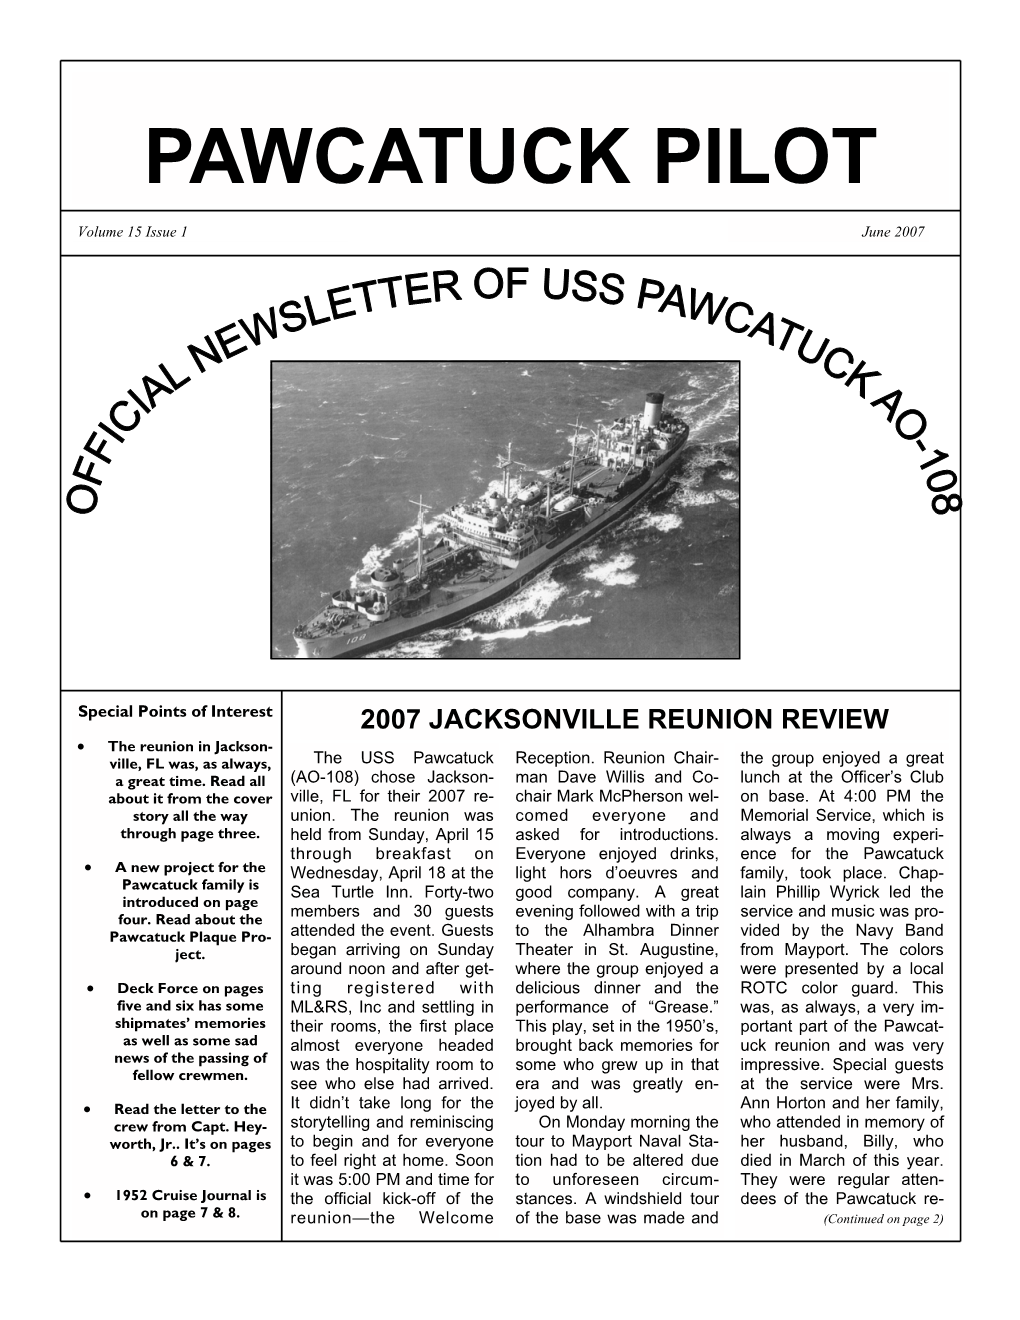 Pawcatuck Pilot Newsletter